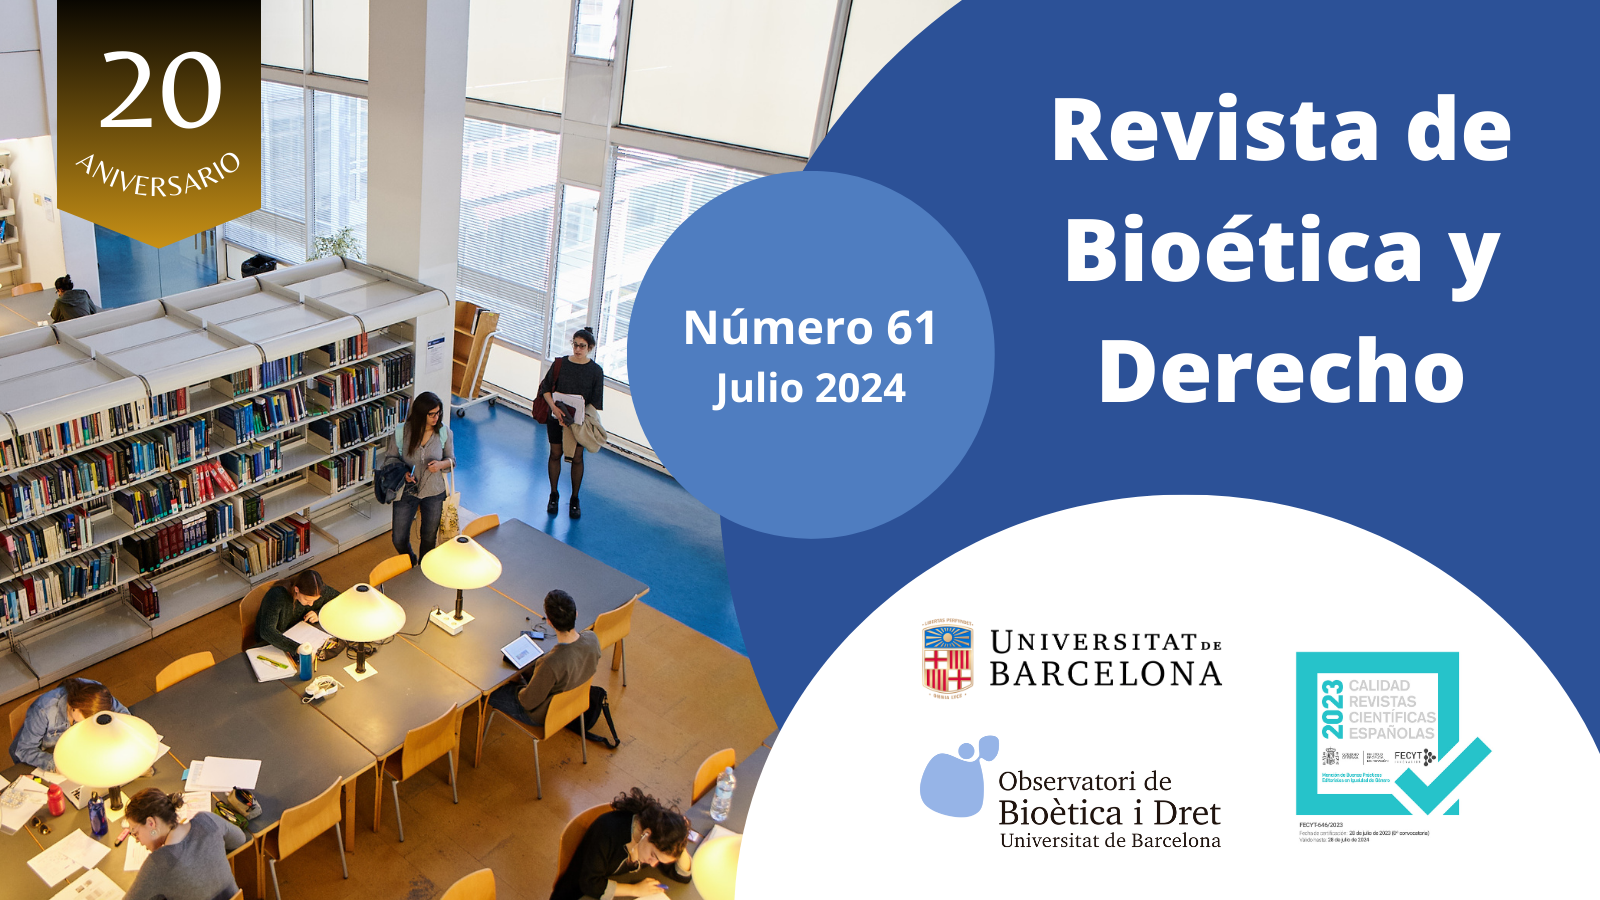 					Ver 2024: Núm. 61 - jul - Dosier sobre “Movilidad de biomateriales humanos destinados a la reproducción”, coordinado por M. Puig Hernández
				